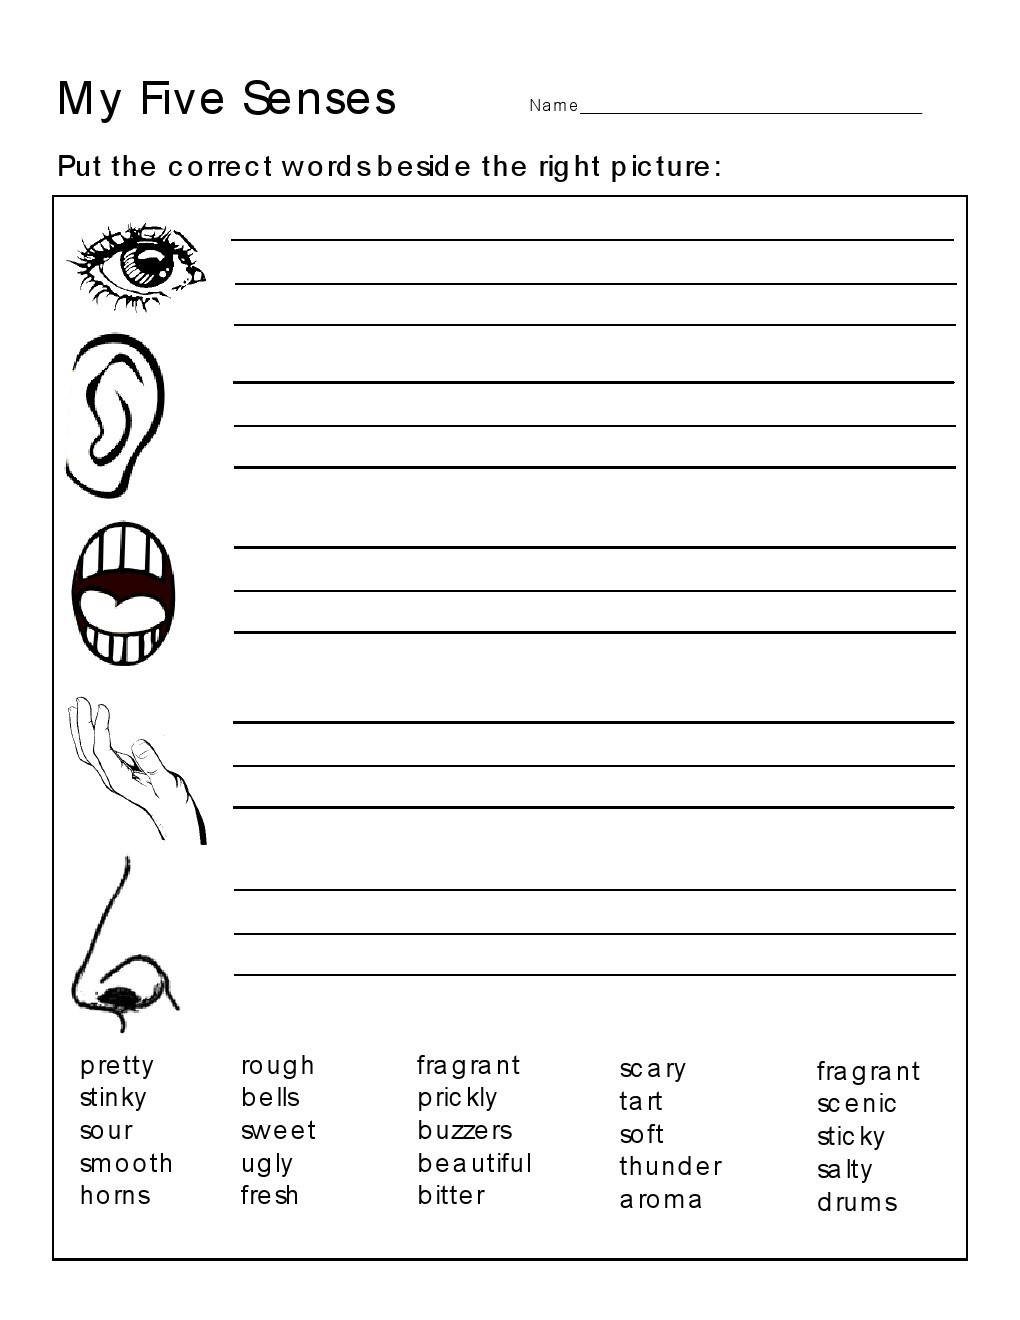 5 Senses Worksheet for Kindergarten Kindergarten Worksheets Kindergarten Worksheets the 5